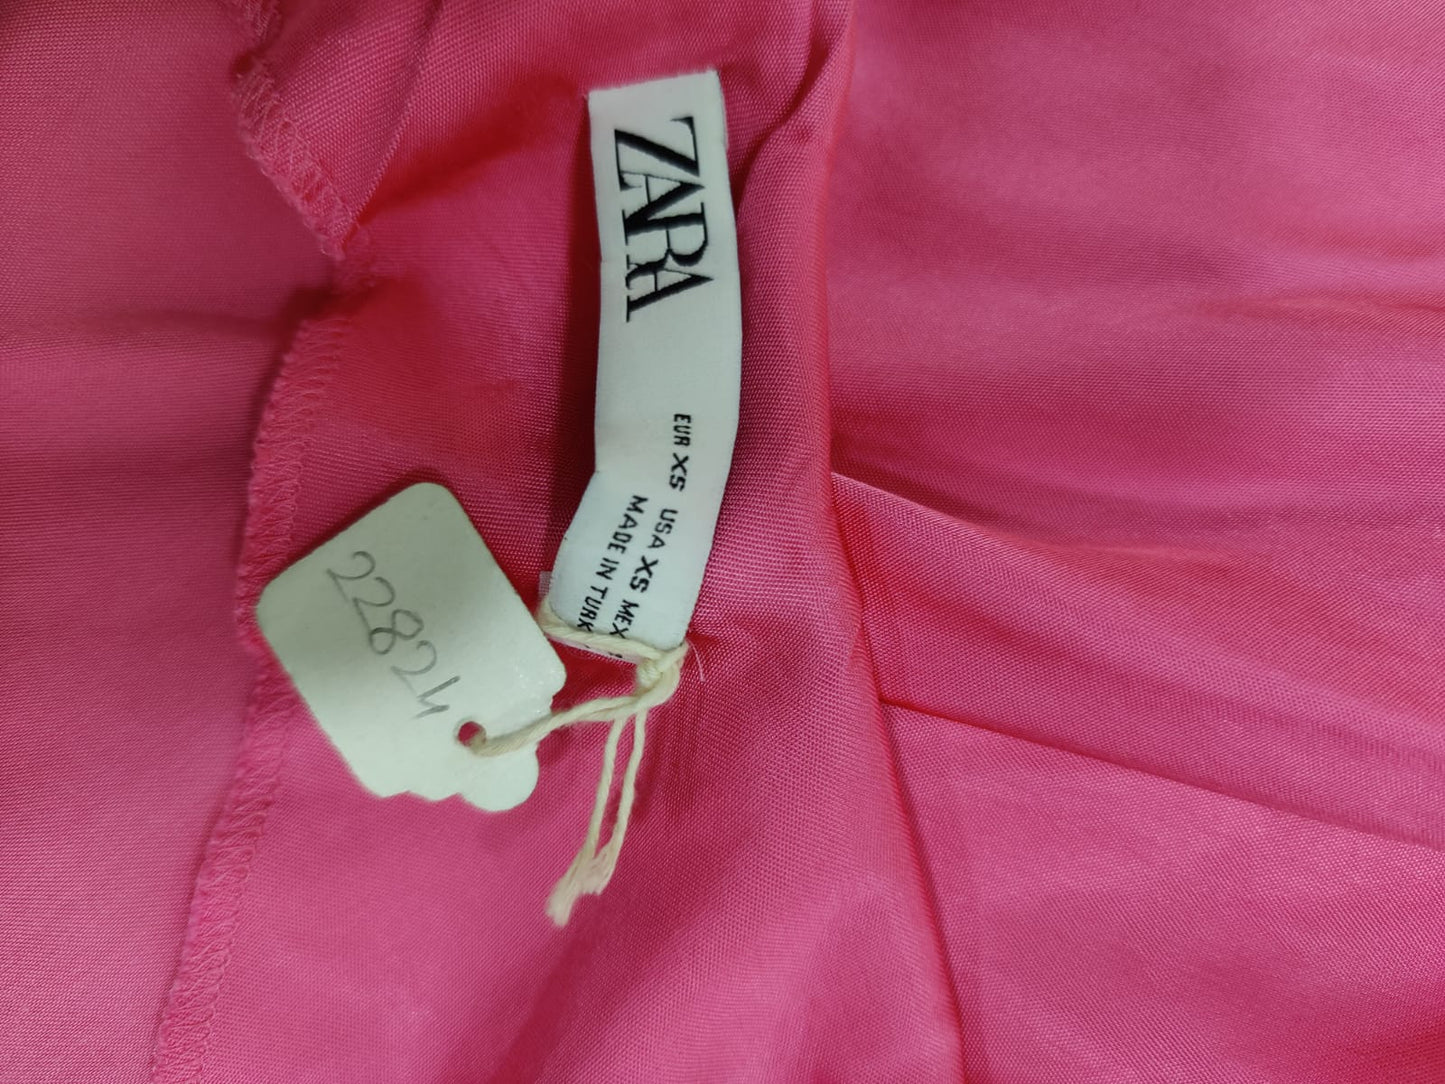 ZARA Pink Satin Slip Dress | Relove